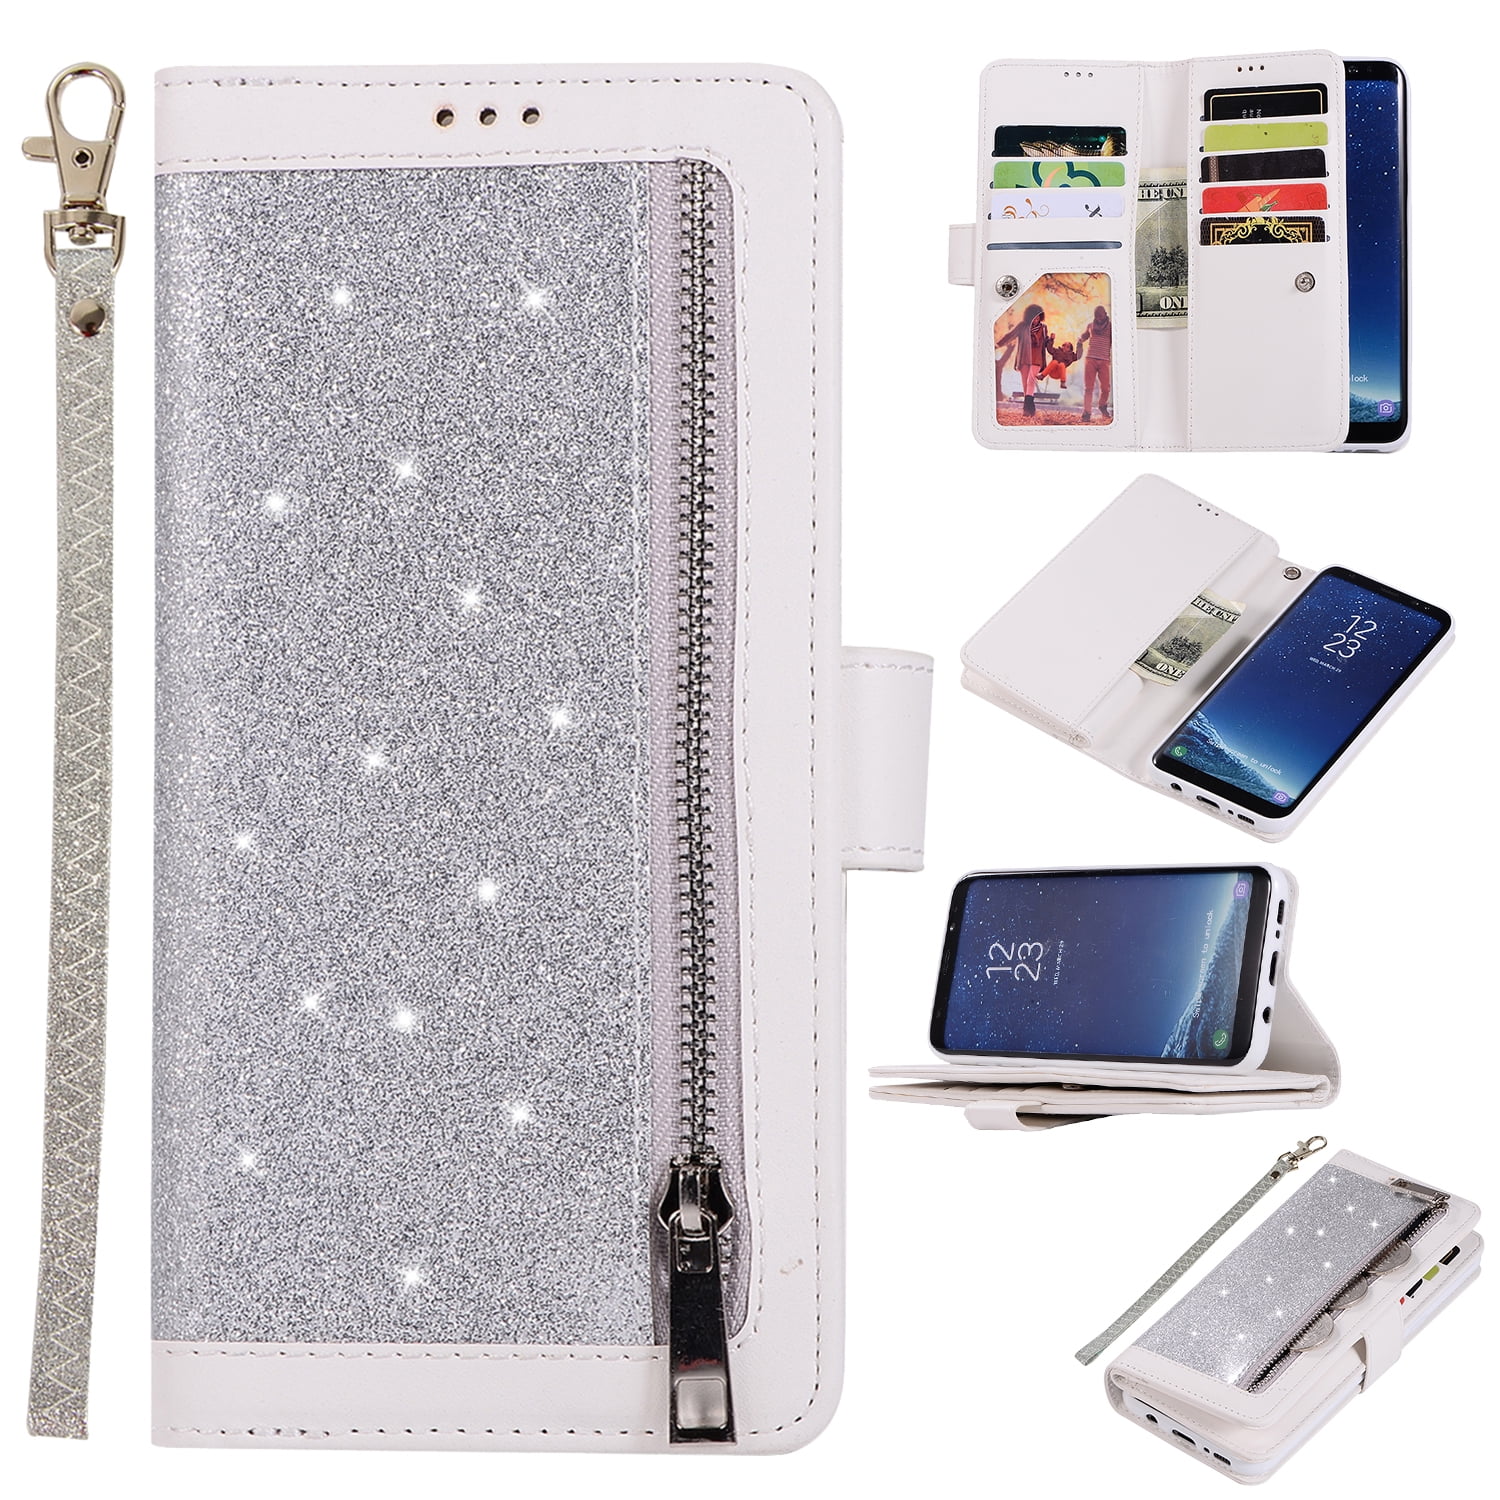 Karomenic kompatibel mit Samsung Galaxy S8 PU Leder Hülle 3D Glitzer Diamant Handyhülle Brieftasche Durchsichtig Schutzhülle Klapphülle Magnet Ledertasche Bumper Wallet Flip Case Etui,Weiß 